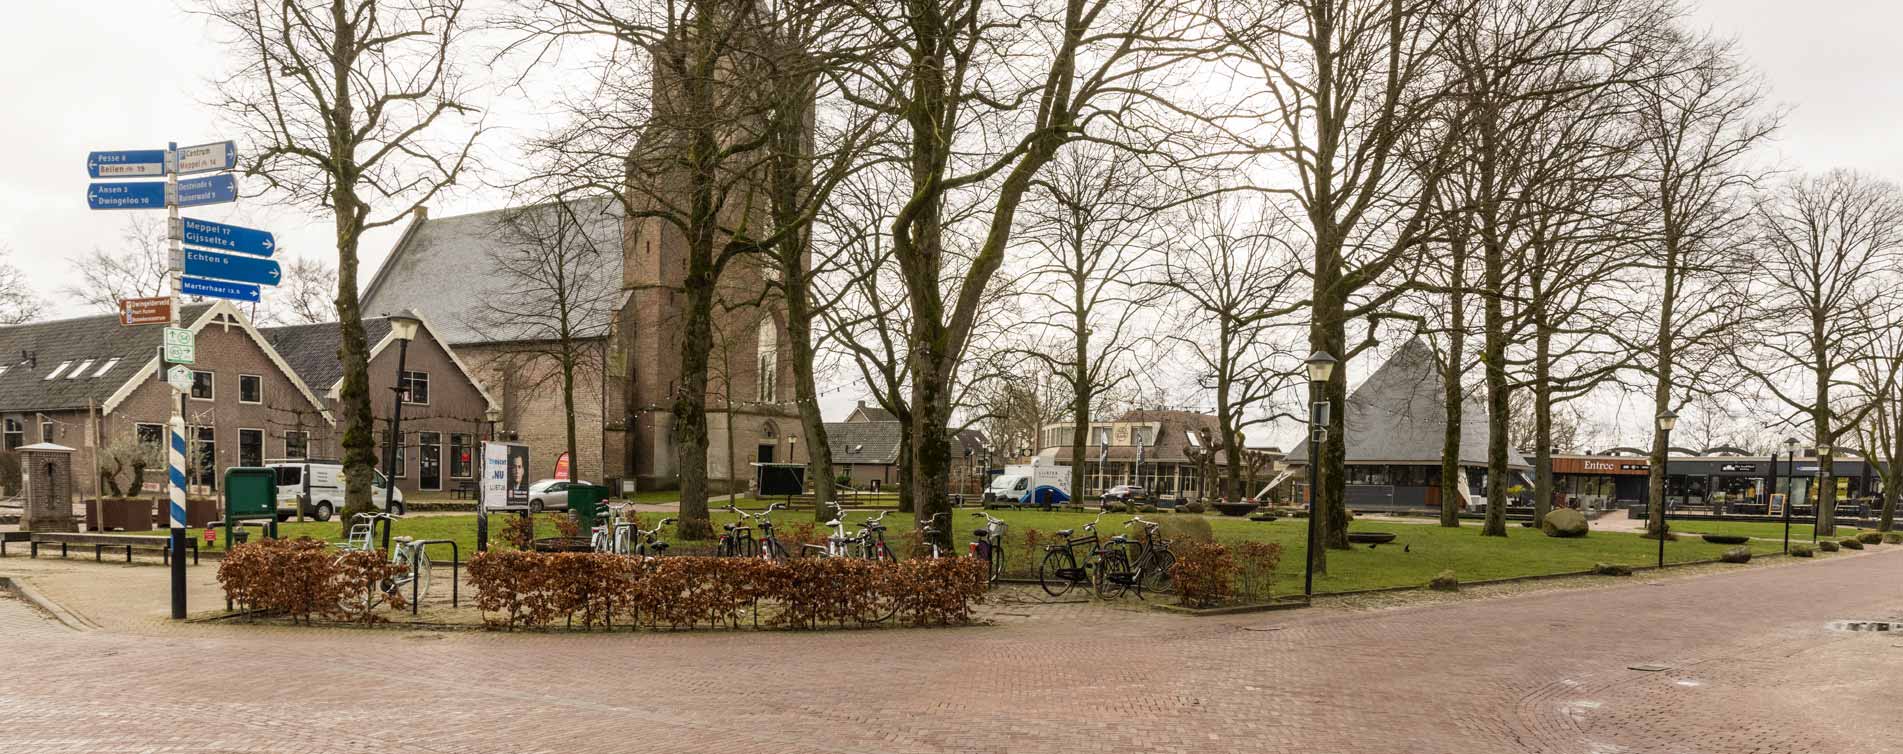 Park voor de kerk in Ruinen, Veldsink - de Wolden